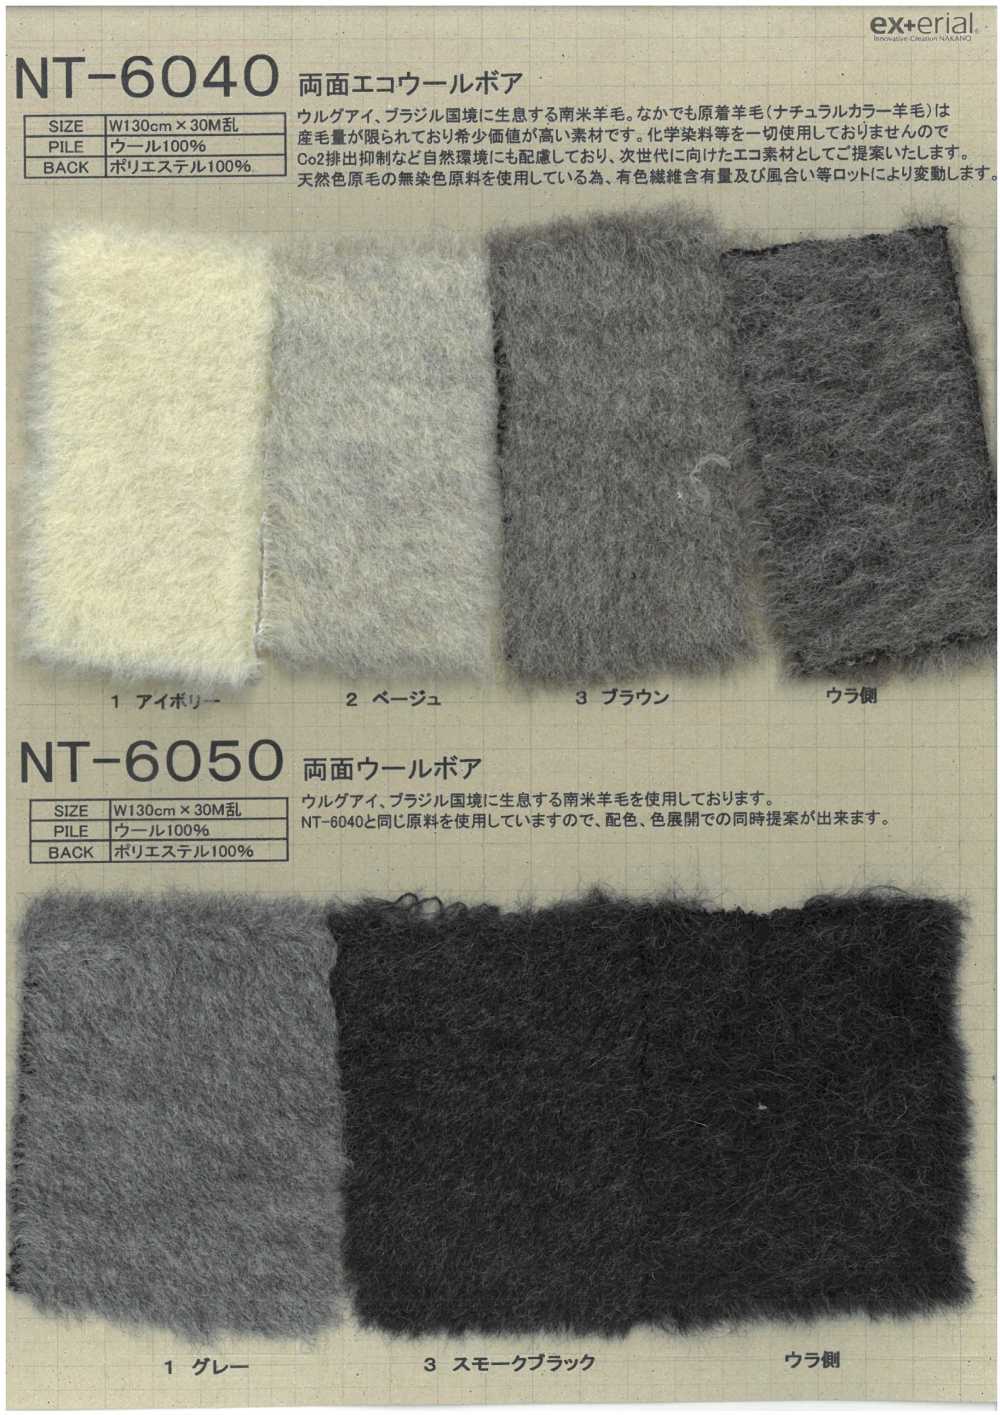 NT-6040 Craft Fur [boa De Lana Ecológica De Doble Cara][Fabrica Textil] Industria De La Media Nakano